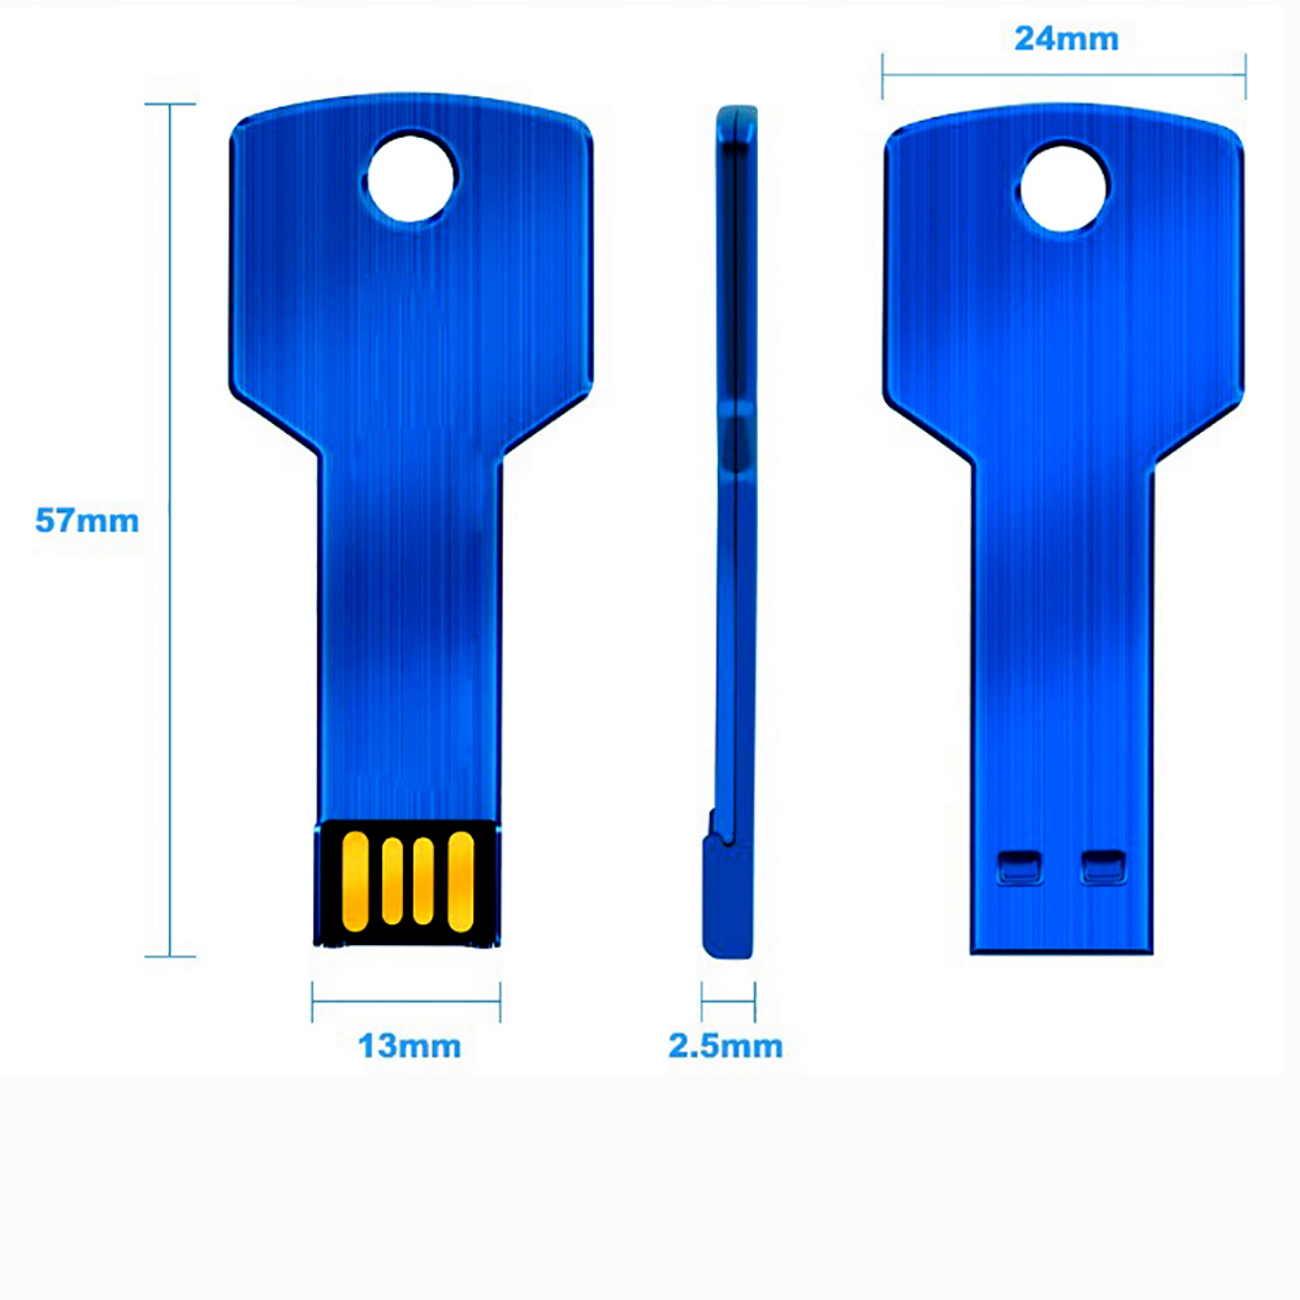 USB GERMANY KeyBlau 16GB USB-Stick 16 GB) (Blau